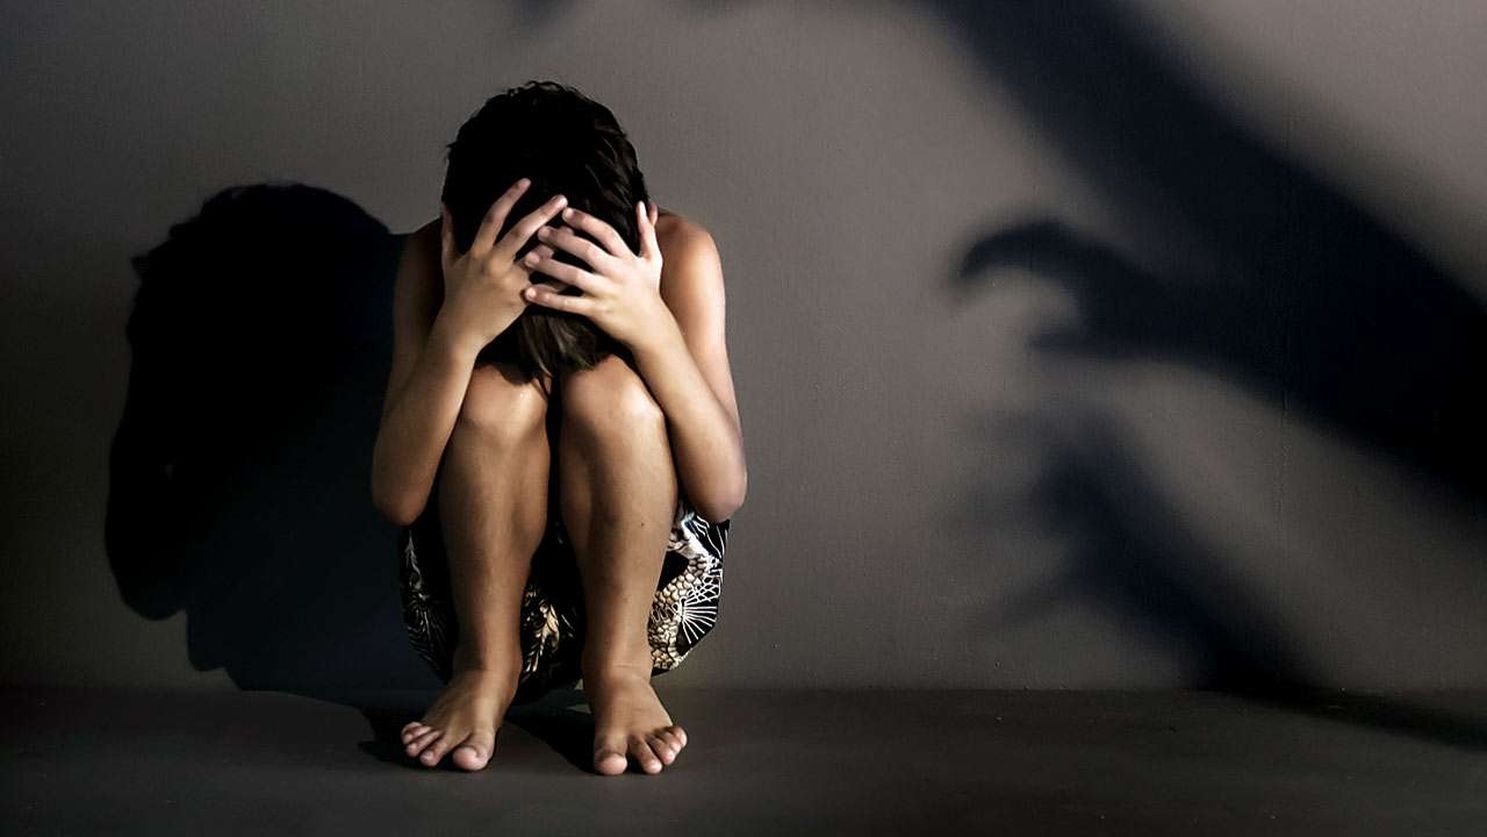 घर में अकेली पाकर नाबालिग के साथ युवक ने किया बलात्कार, गर्भवती होने पर सामने आया मामला